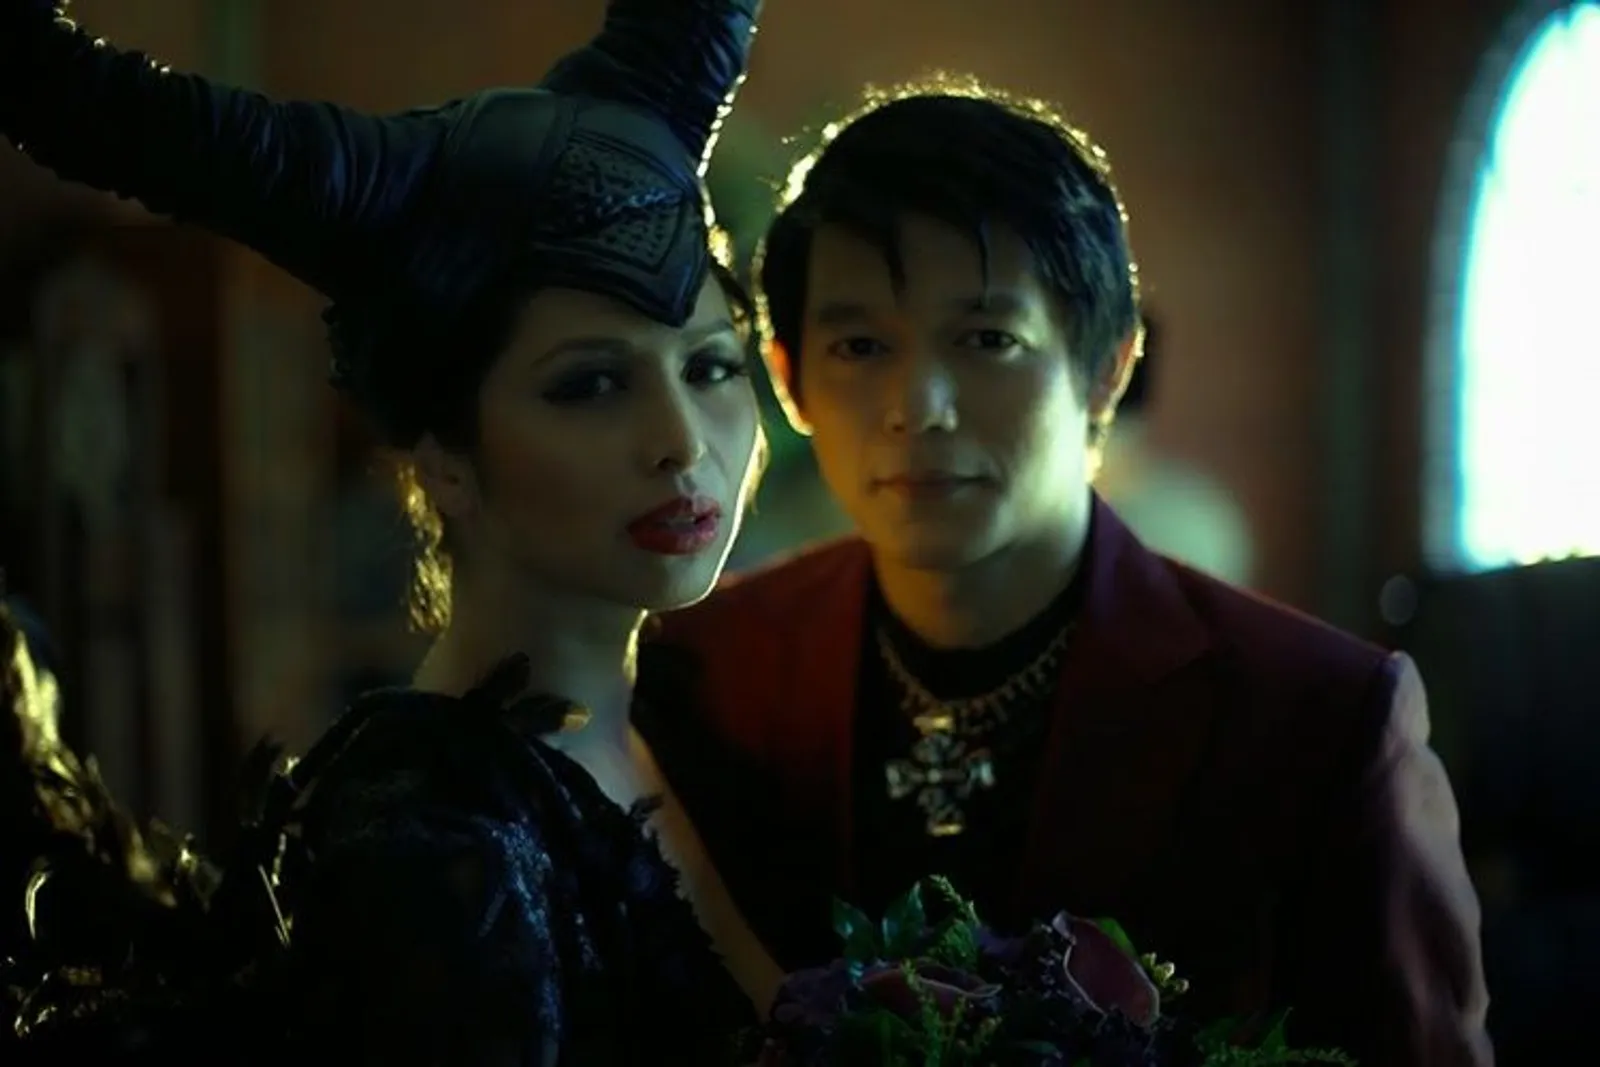 10 Foto Pernikahan Bertema Maleficent, Unik atau Menakutkan?